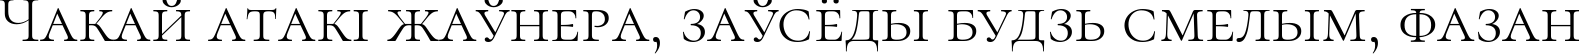 Пример написания шрифтом Cormorant SC Light текста на белорусском